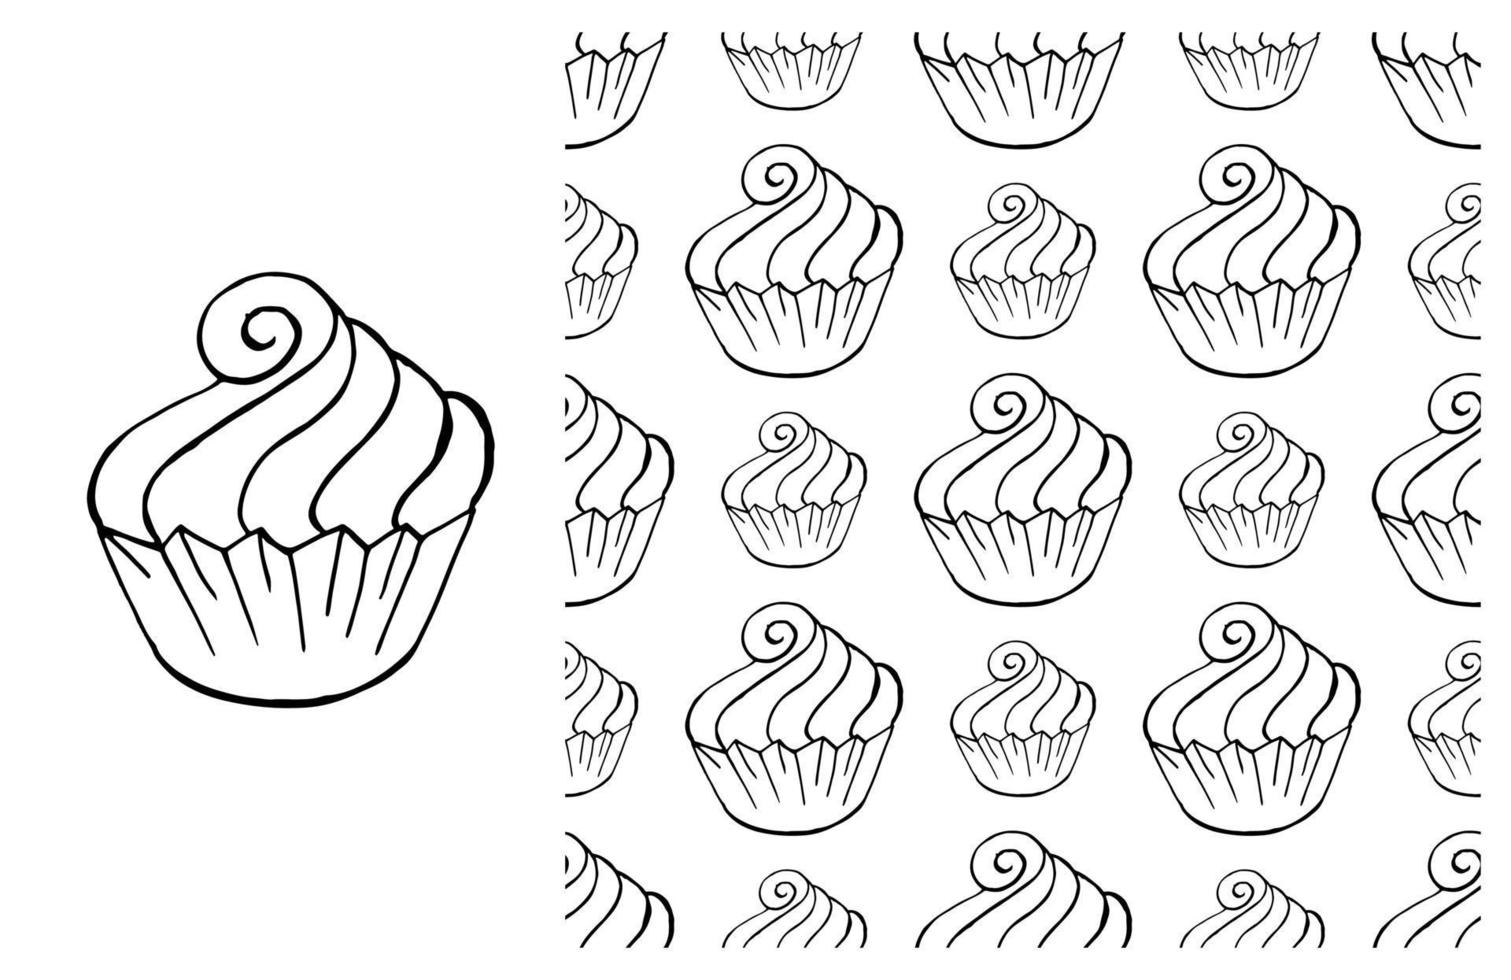 cupcake para colorir. conjunto de elemento e padrão perfeito vetor